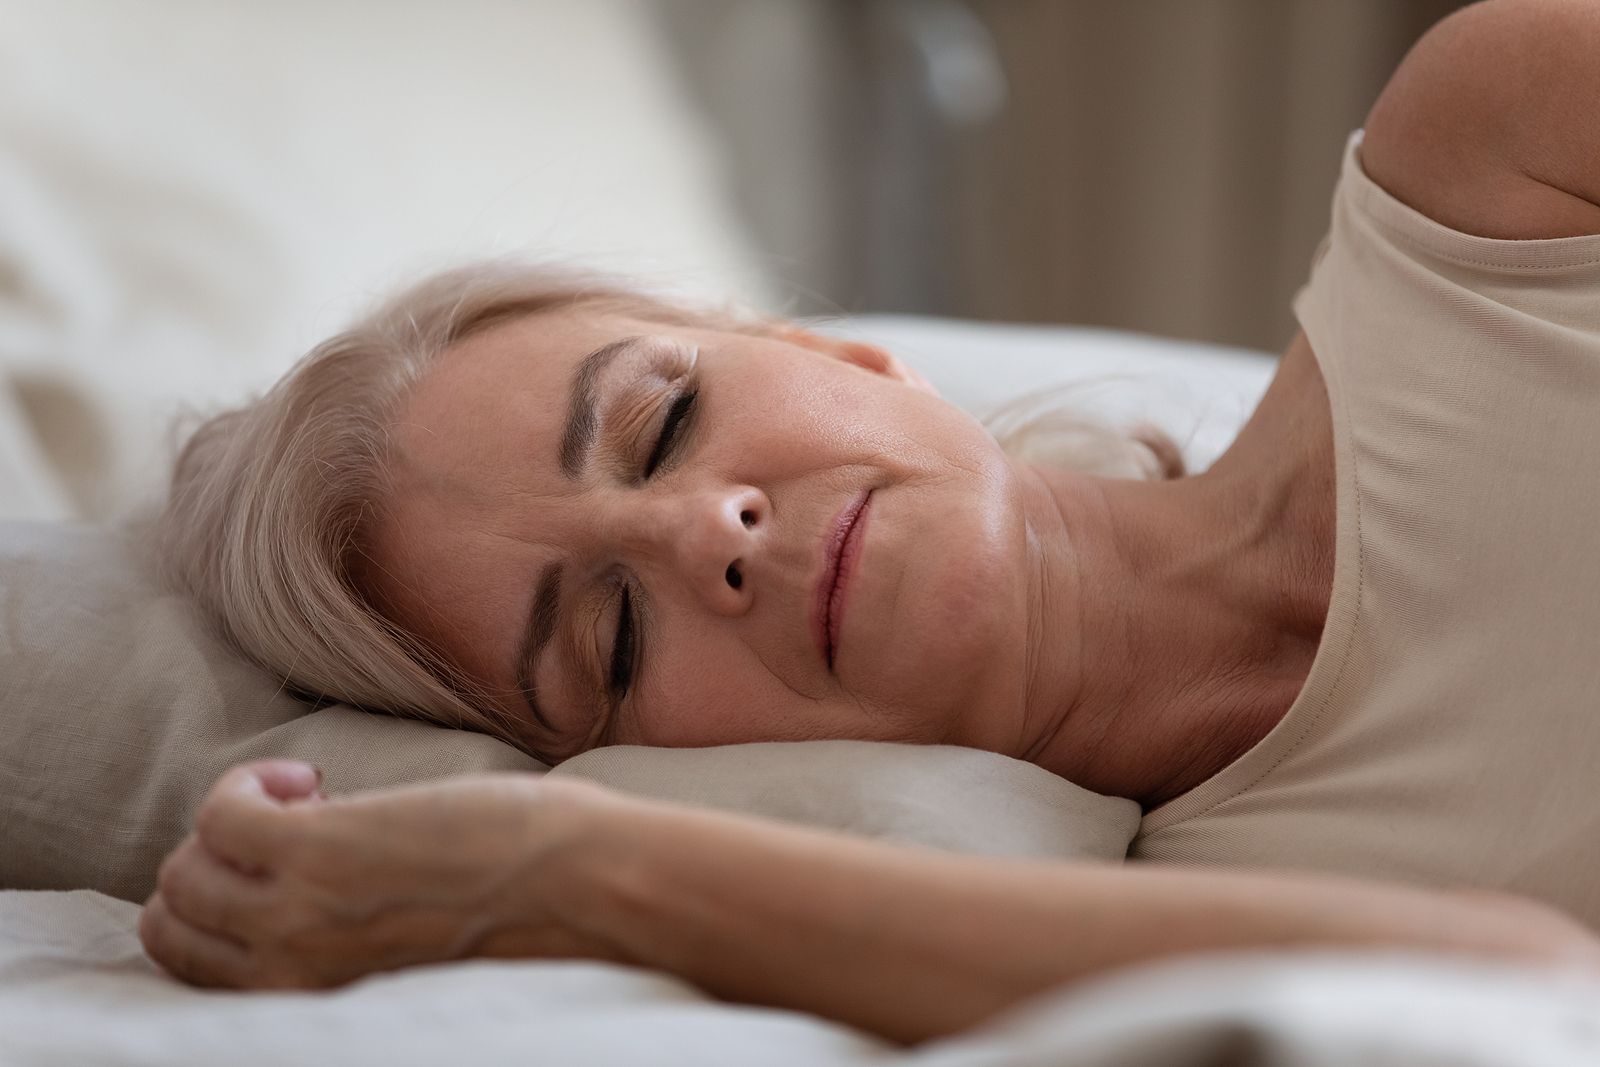 Dormir bien es indispensable para no sufrir alteraciones en nuestro metabolismo